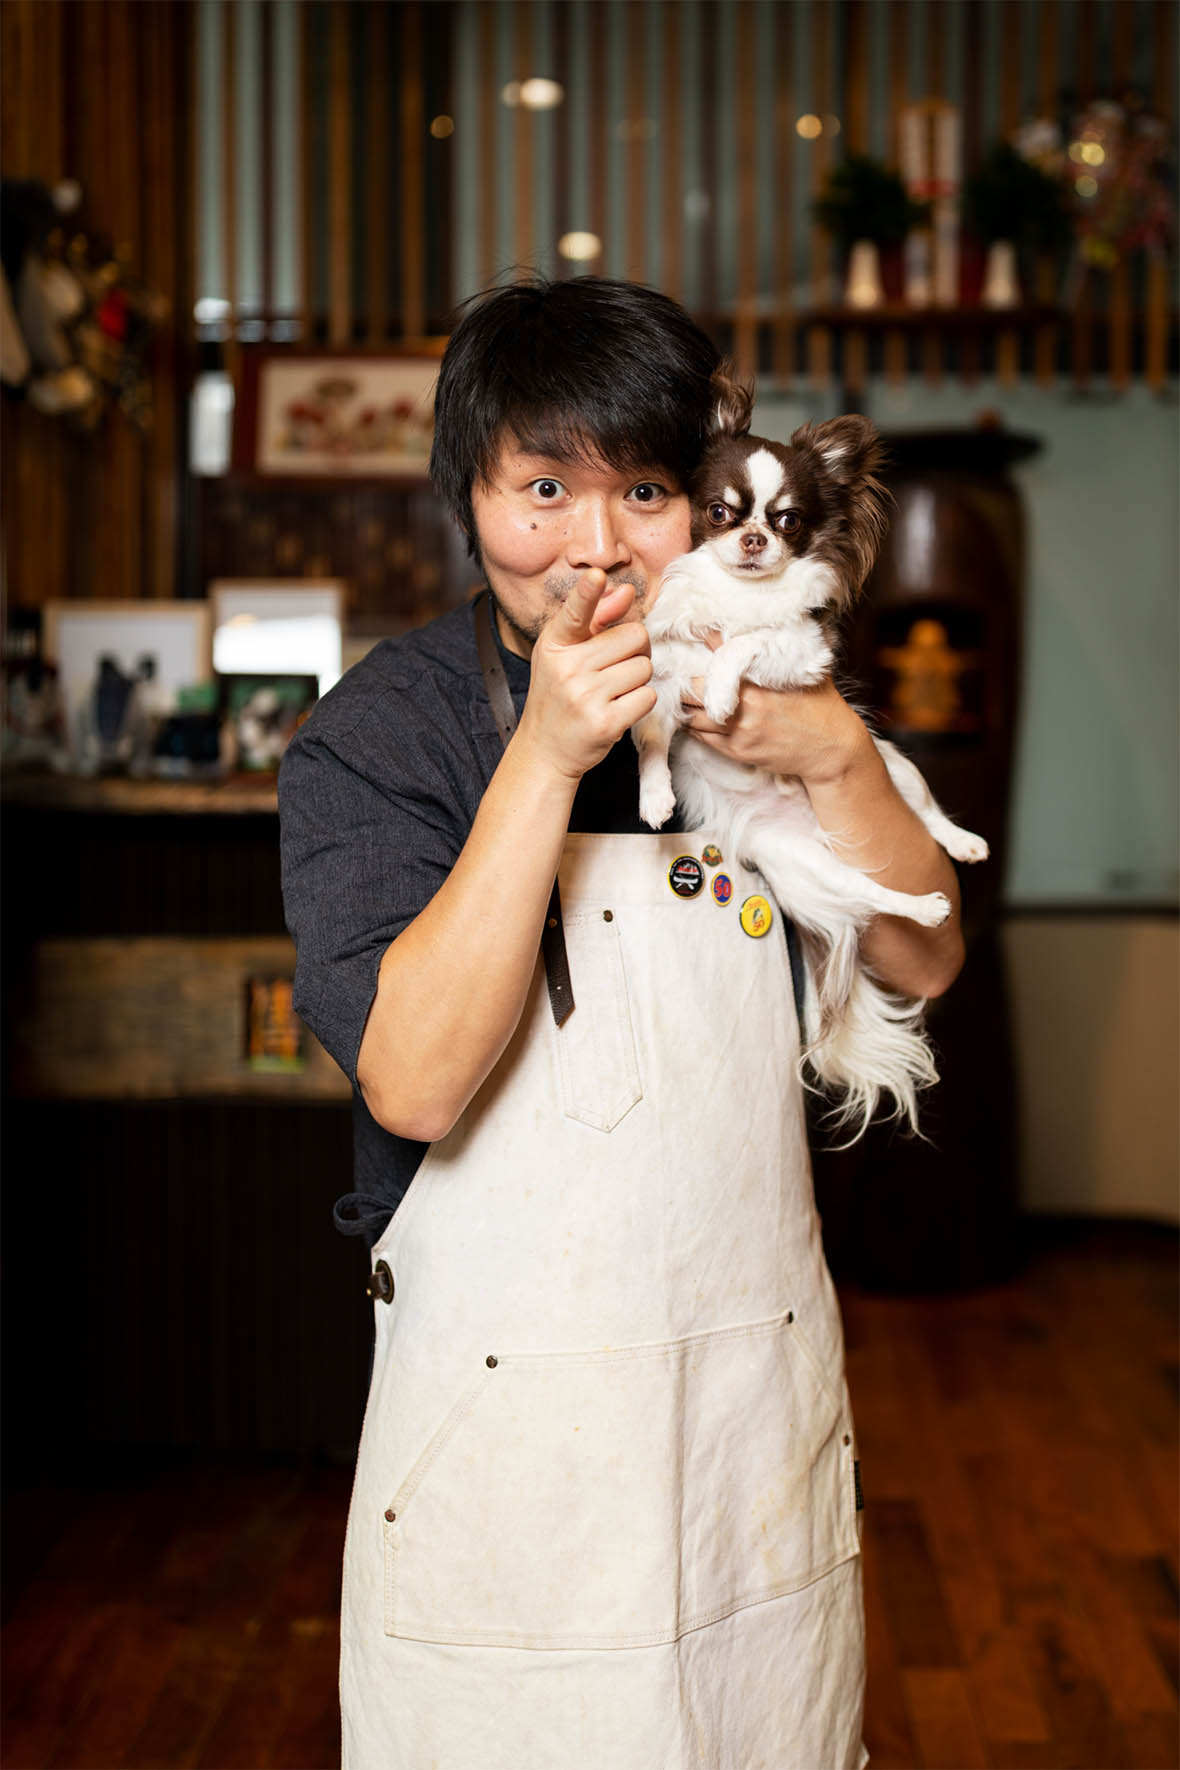 Chef Ziayu Hasegawa